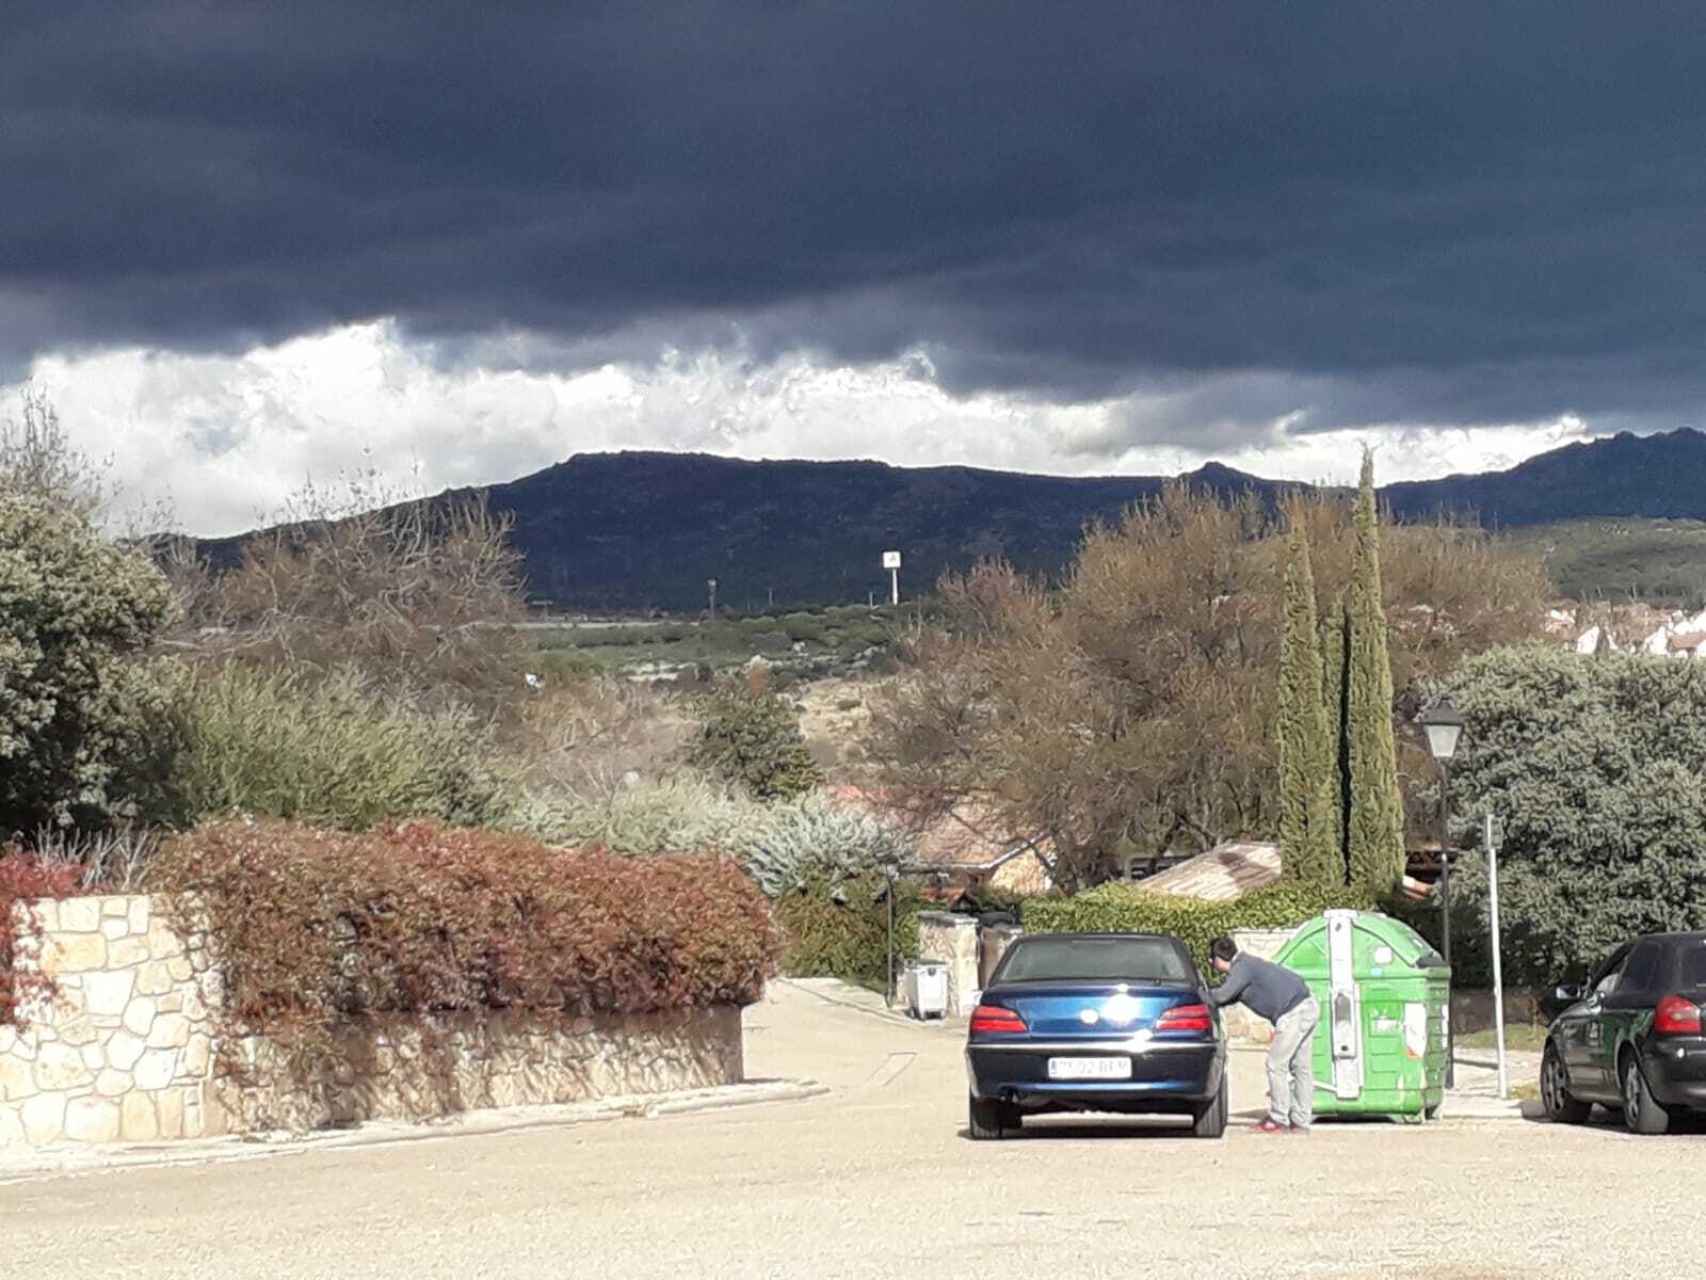 A lo largo de toda la mañana, un coche permanece aparcado con su dueño dentro vigilando la casa de los líderes de Podemos.